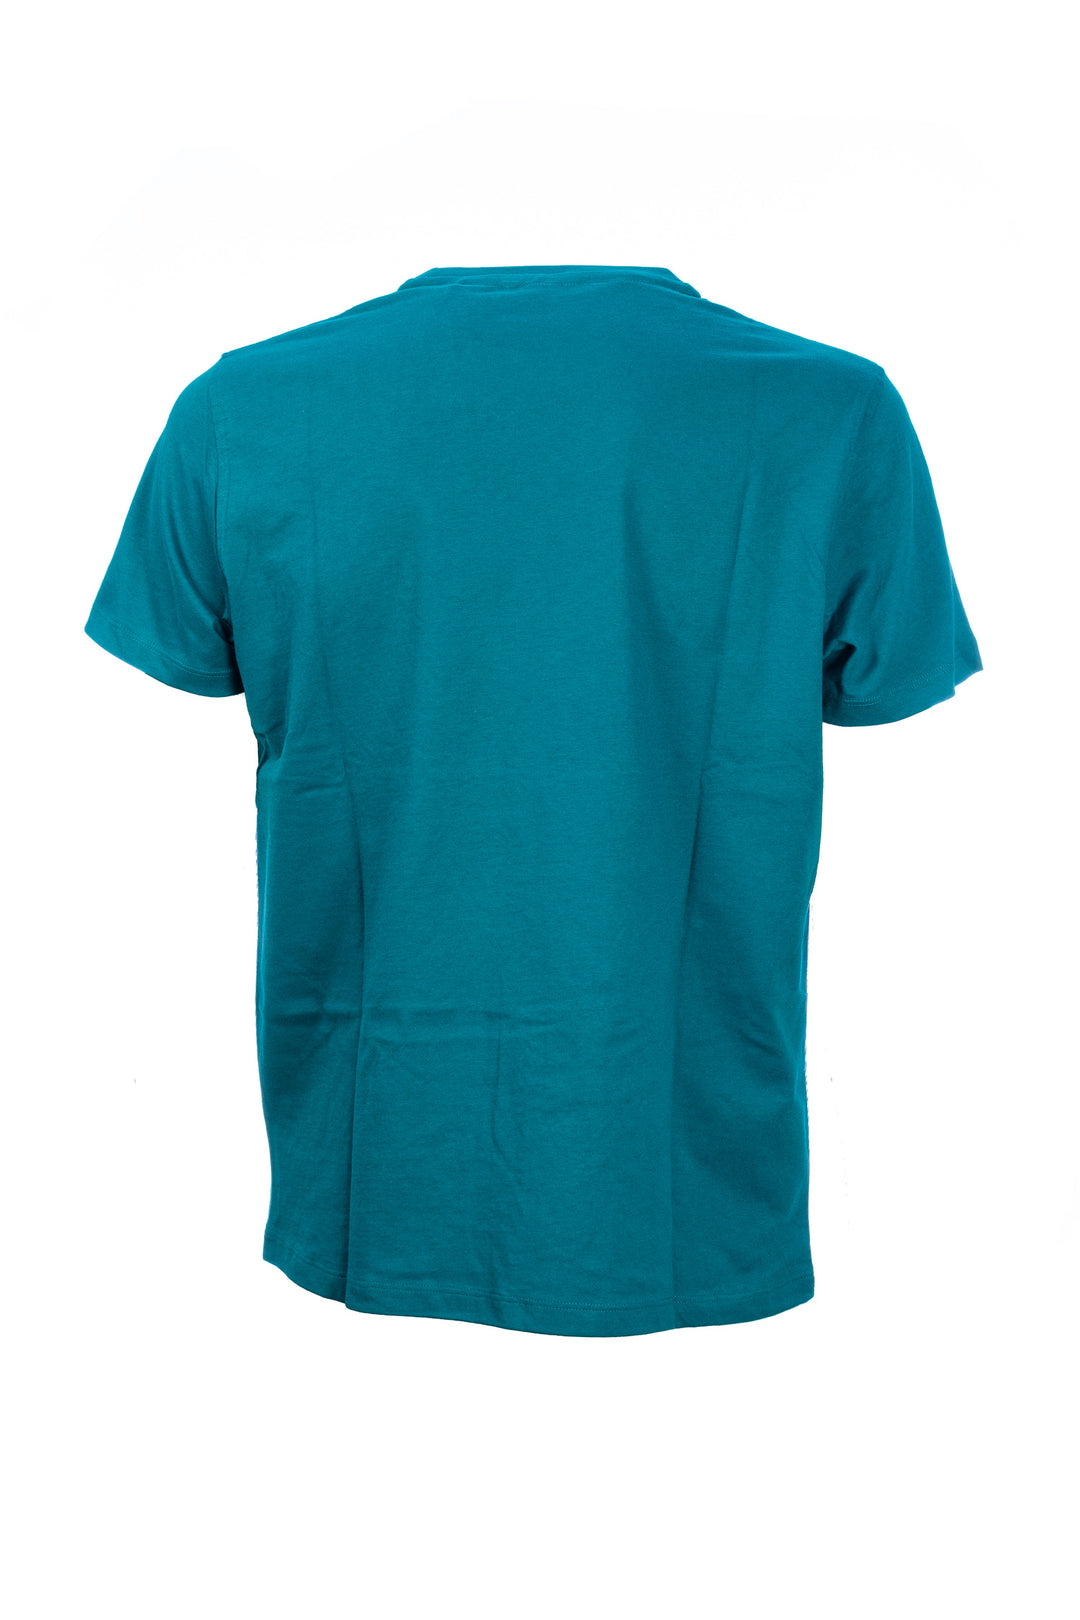 U.S. POLO ASSN. T-shirt ottanio in cotone con logo ricamato sul petto - Mancinelli 1954